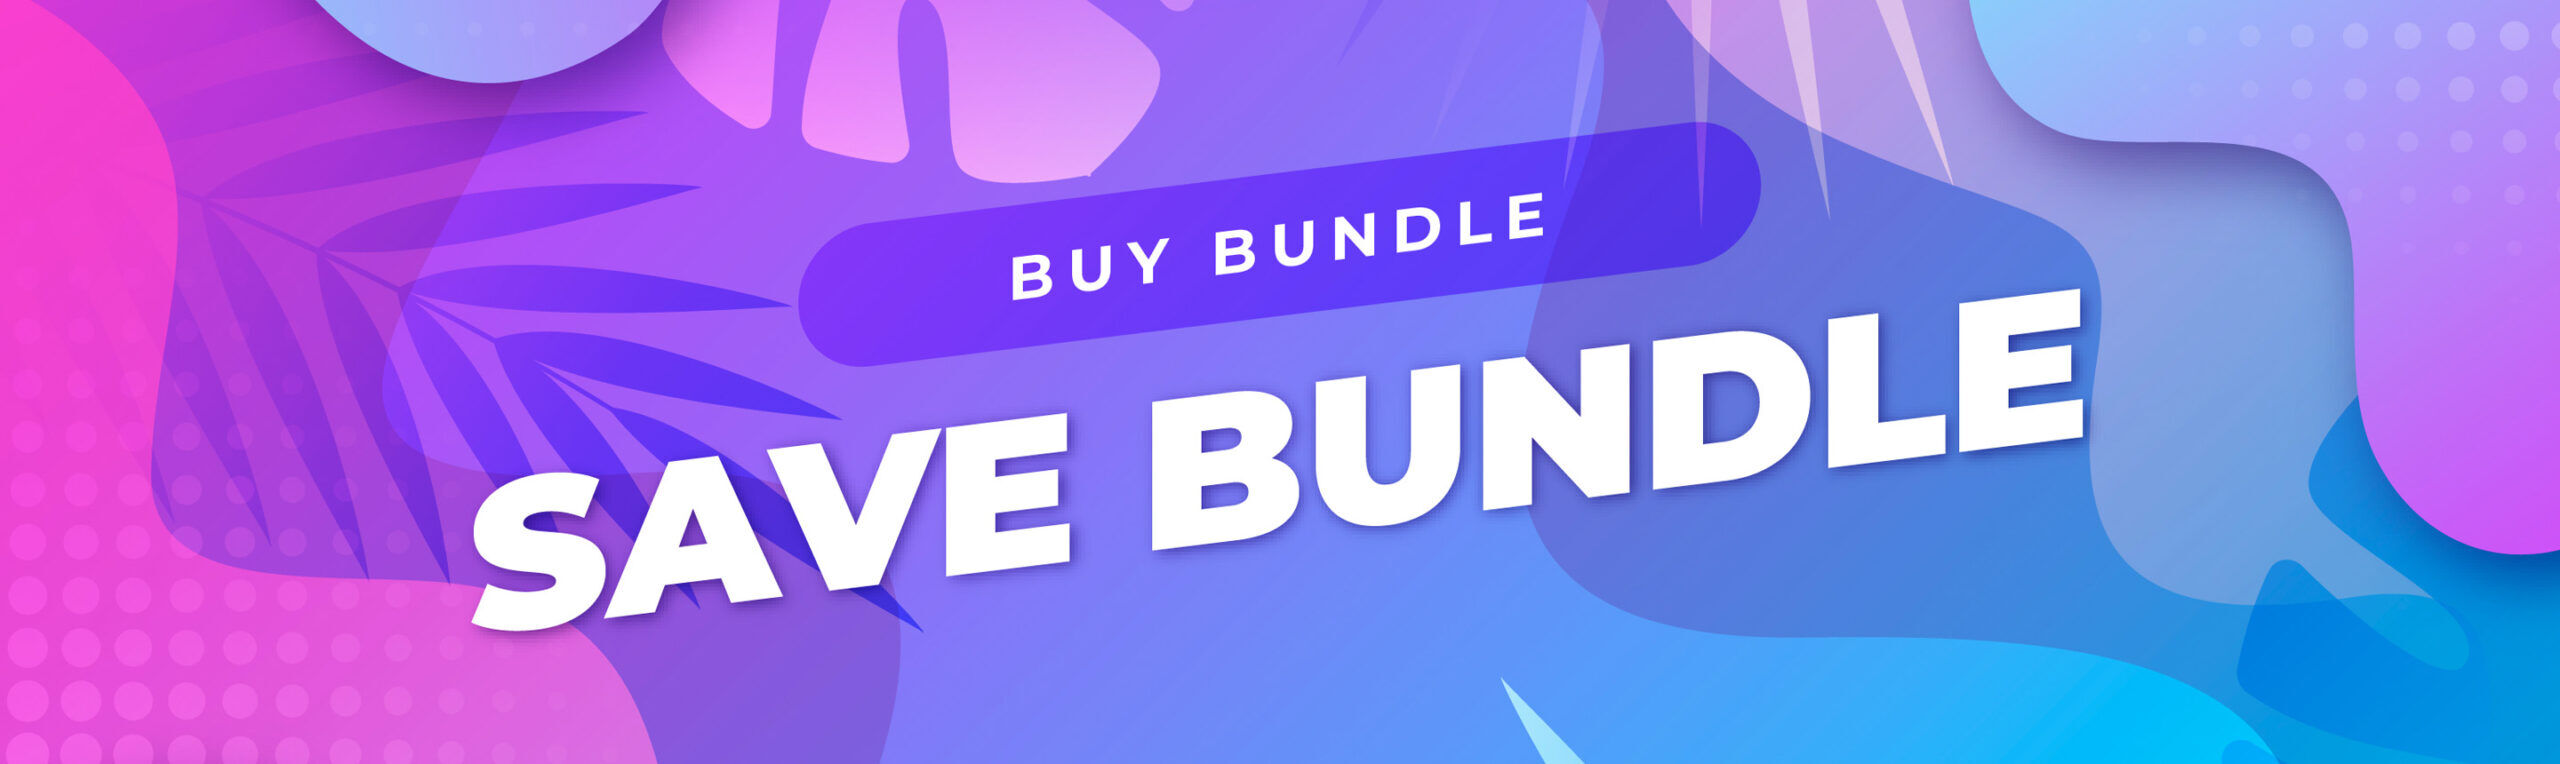 Buy Bundle Save Bundle